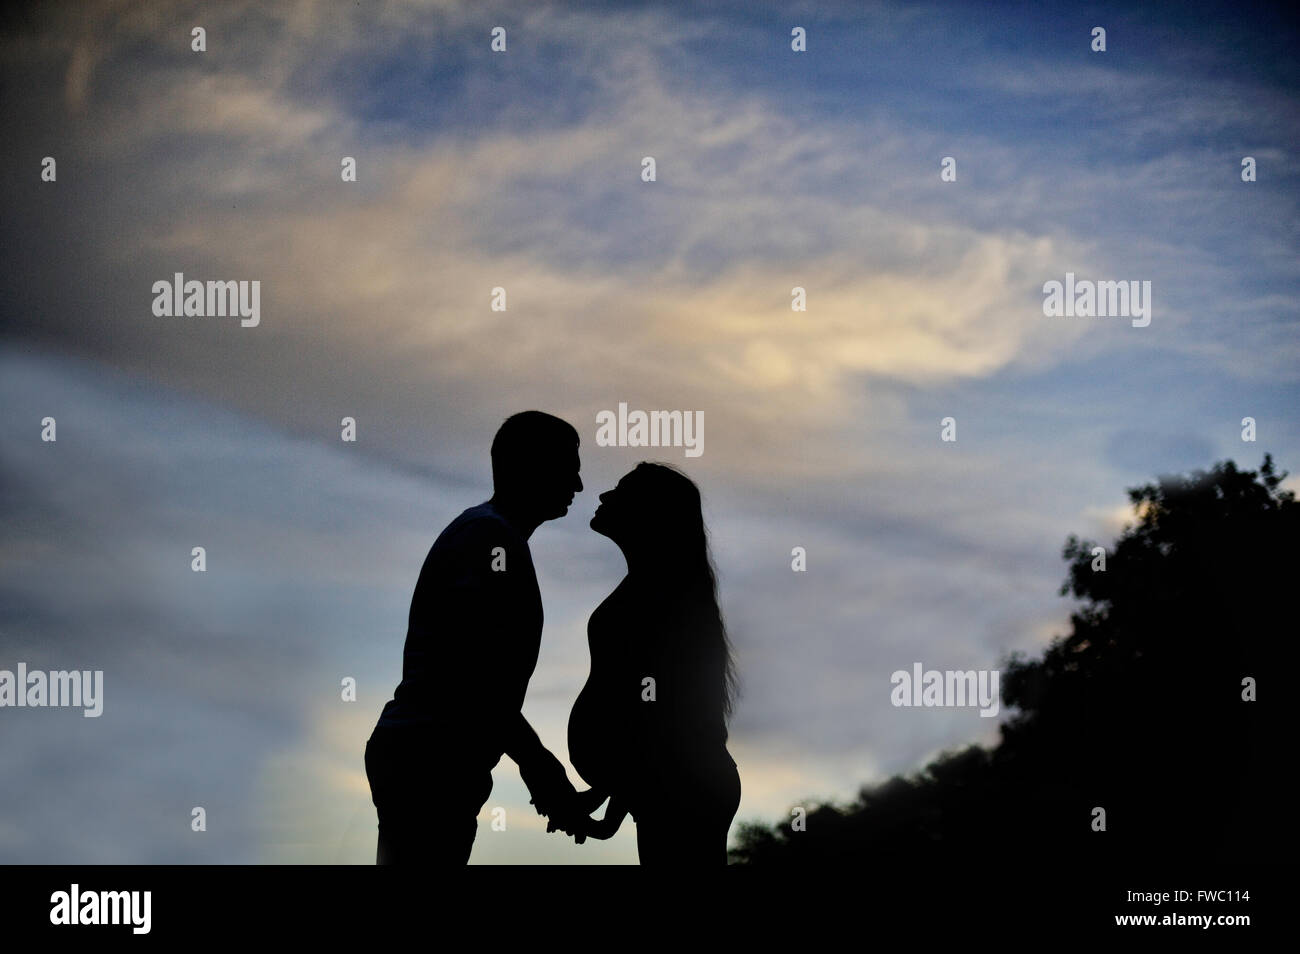 Ein junger Mann und seine schwangere Frau bei Sonnenuntergang. Silhouetten Stockfoto